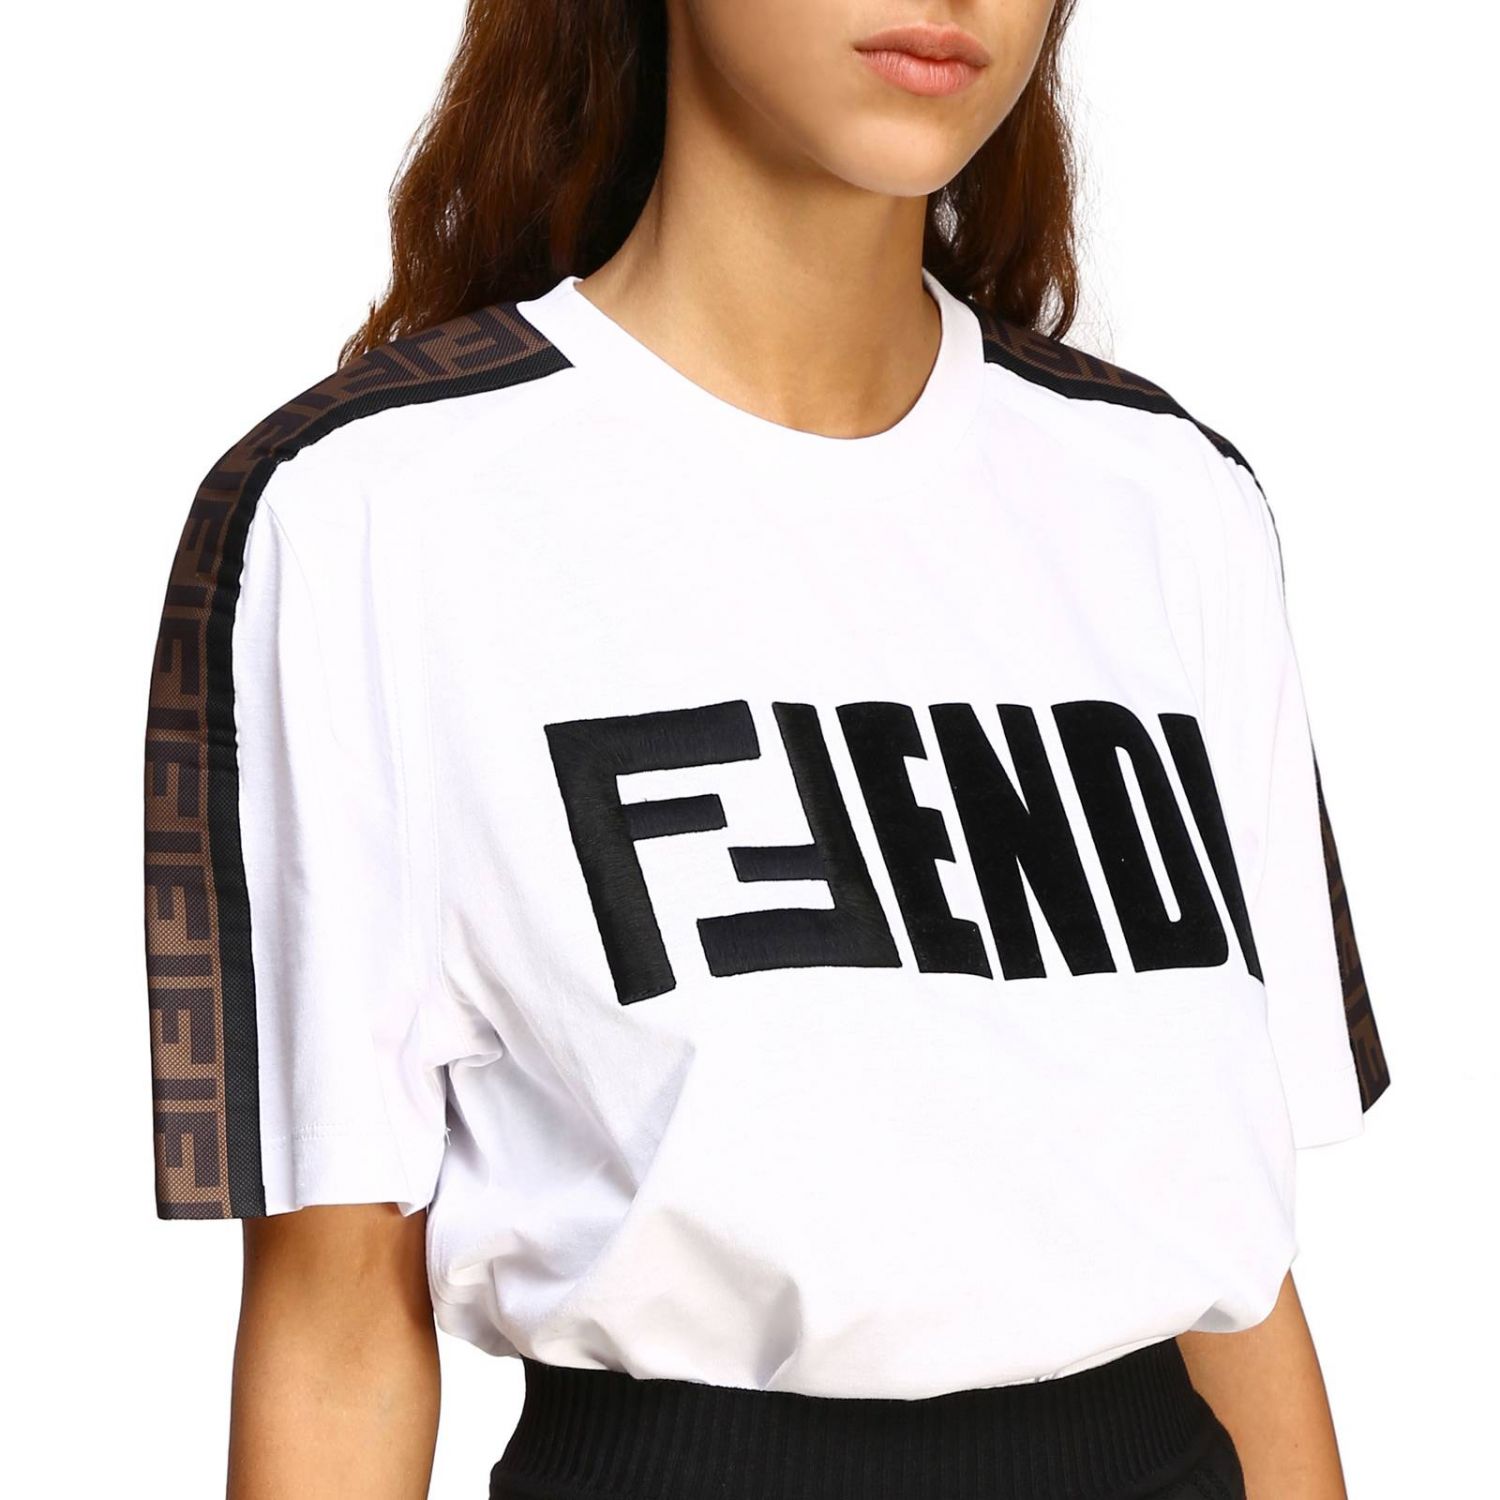 FENDI: T-shirt women | T-Shirt Fendi Women White | T-Shirt Fendi FS7088 ...